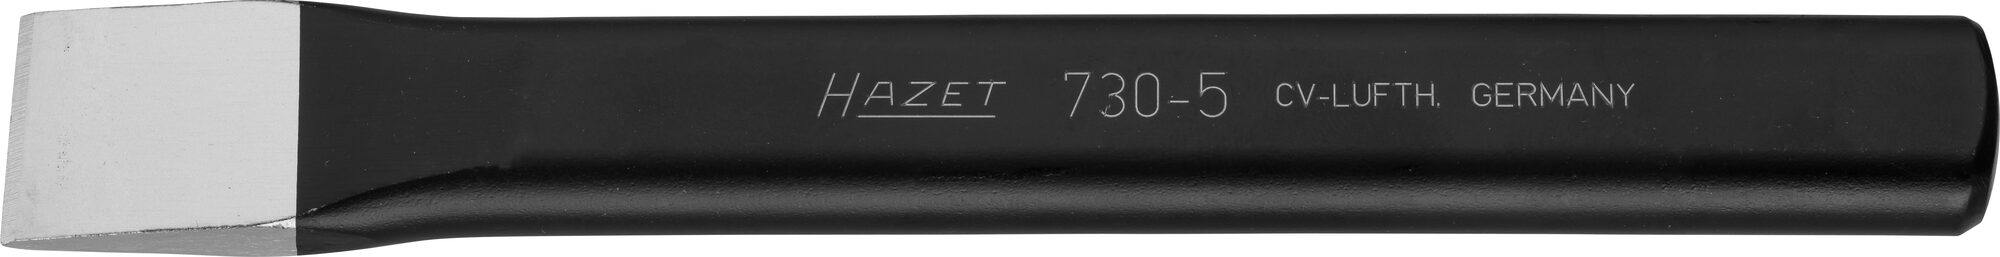 HAZET Flachmeißel 730-5 · 21 mm